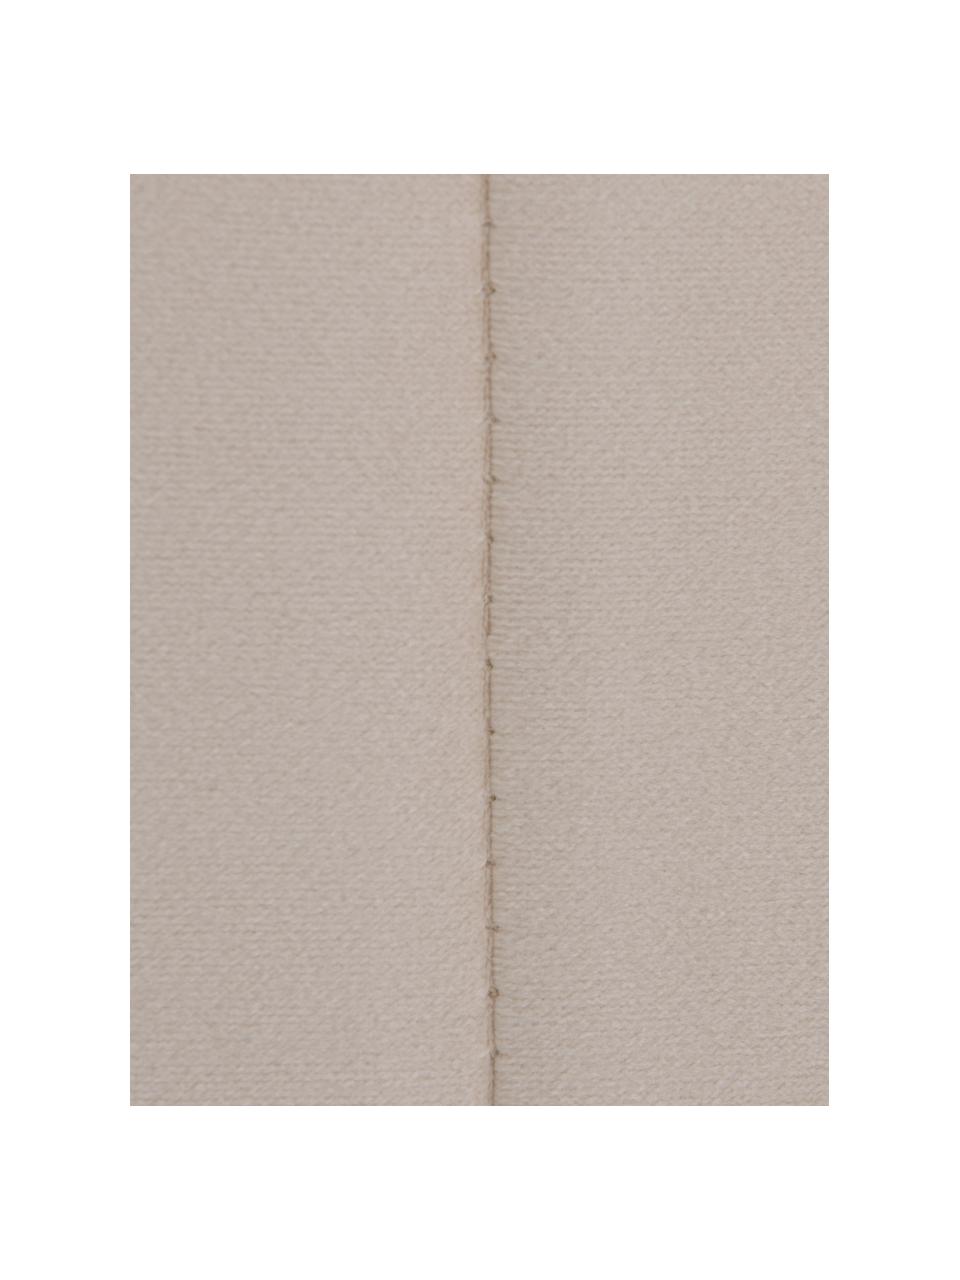 Zagłówek do łóżka tapicerowany z aksamitu Adrio, Tapicerka: 100% aksamit poliestrowy, Stelaż: drewno naturalne, metal, Beżowy aksamit, S 160 x W 64 cm